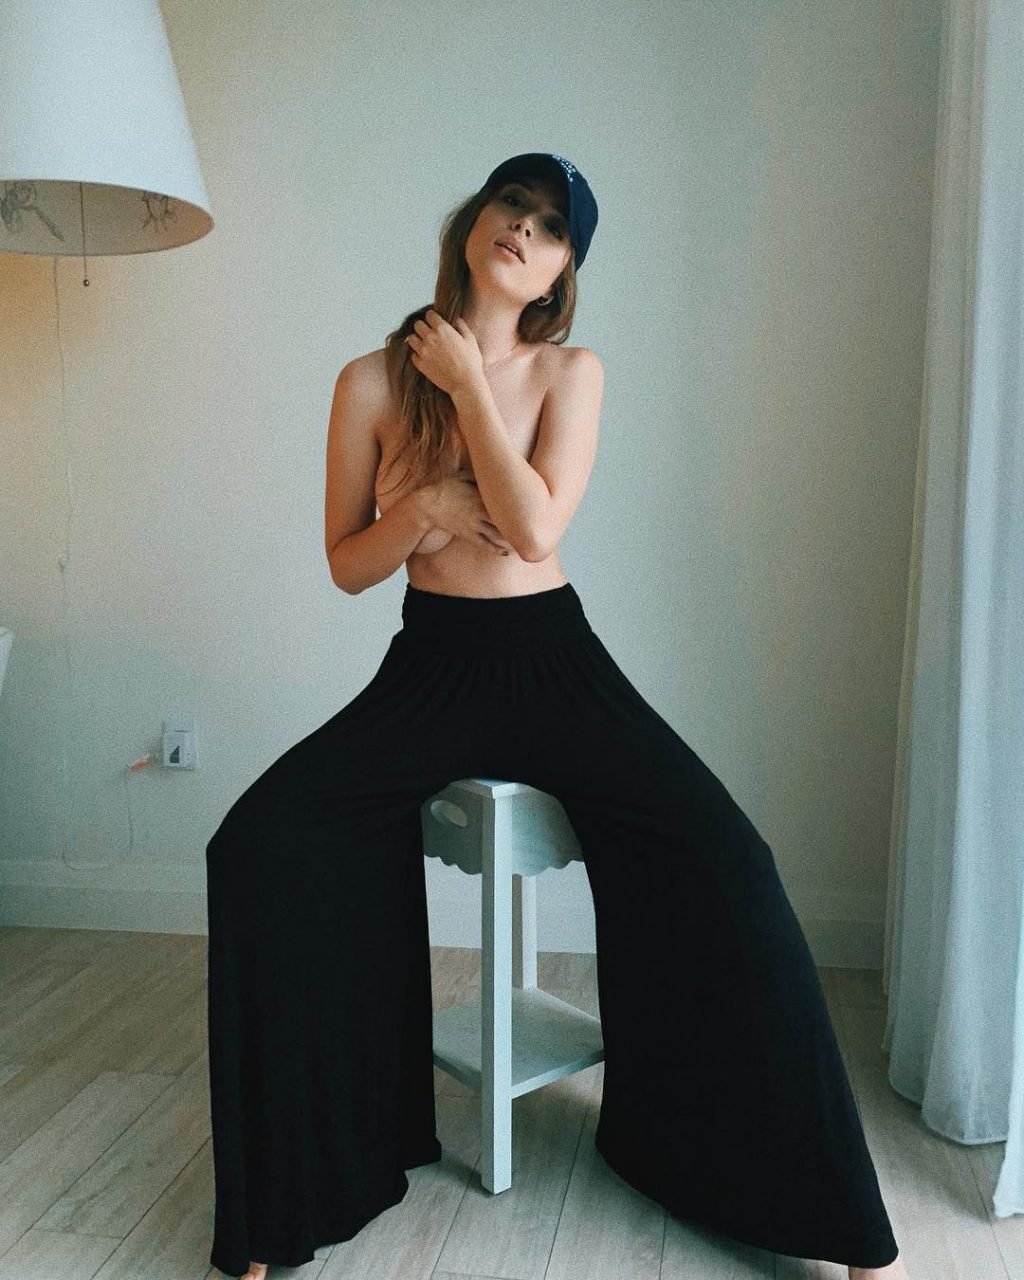 Lauren Summer Nude &amp; Sexy (18 Photos)